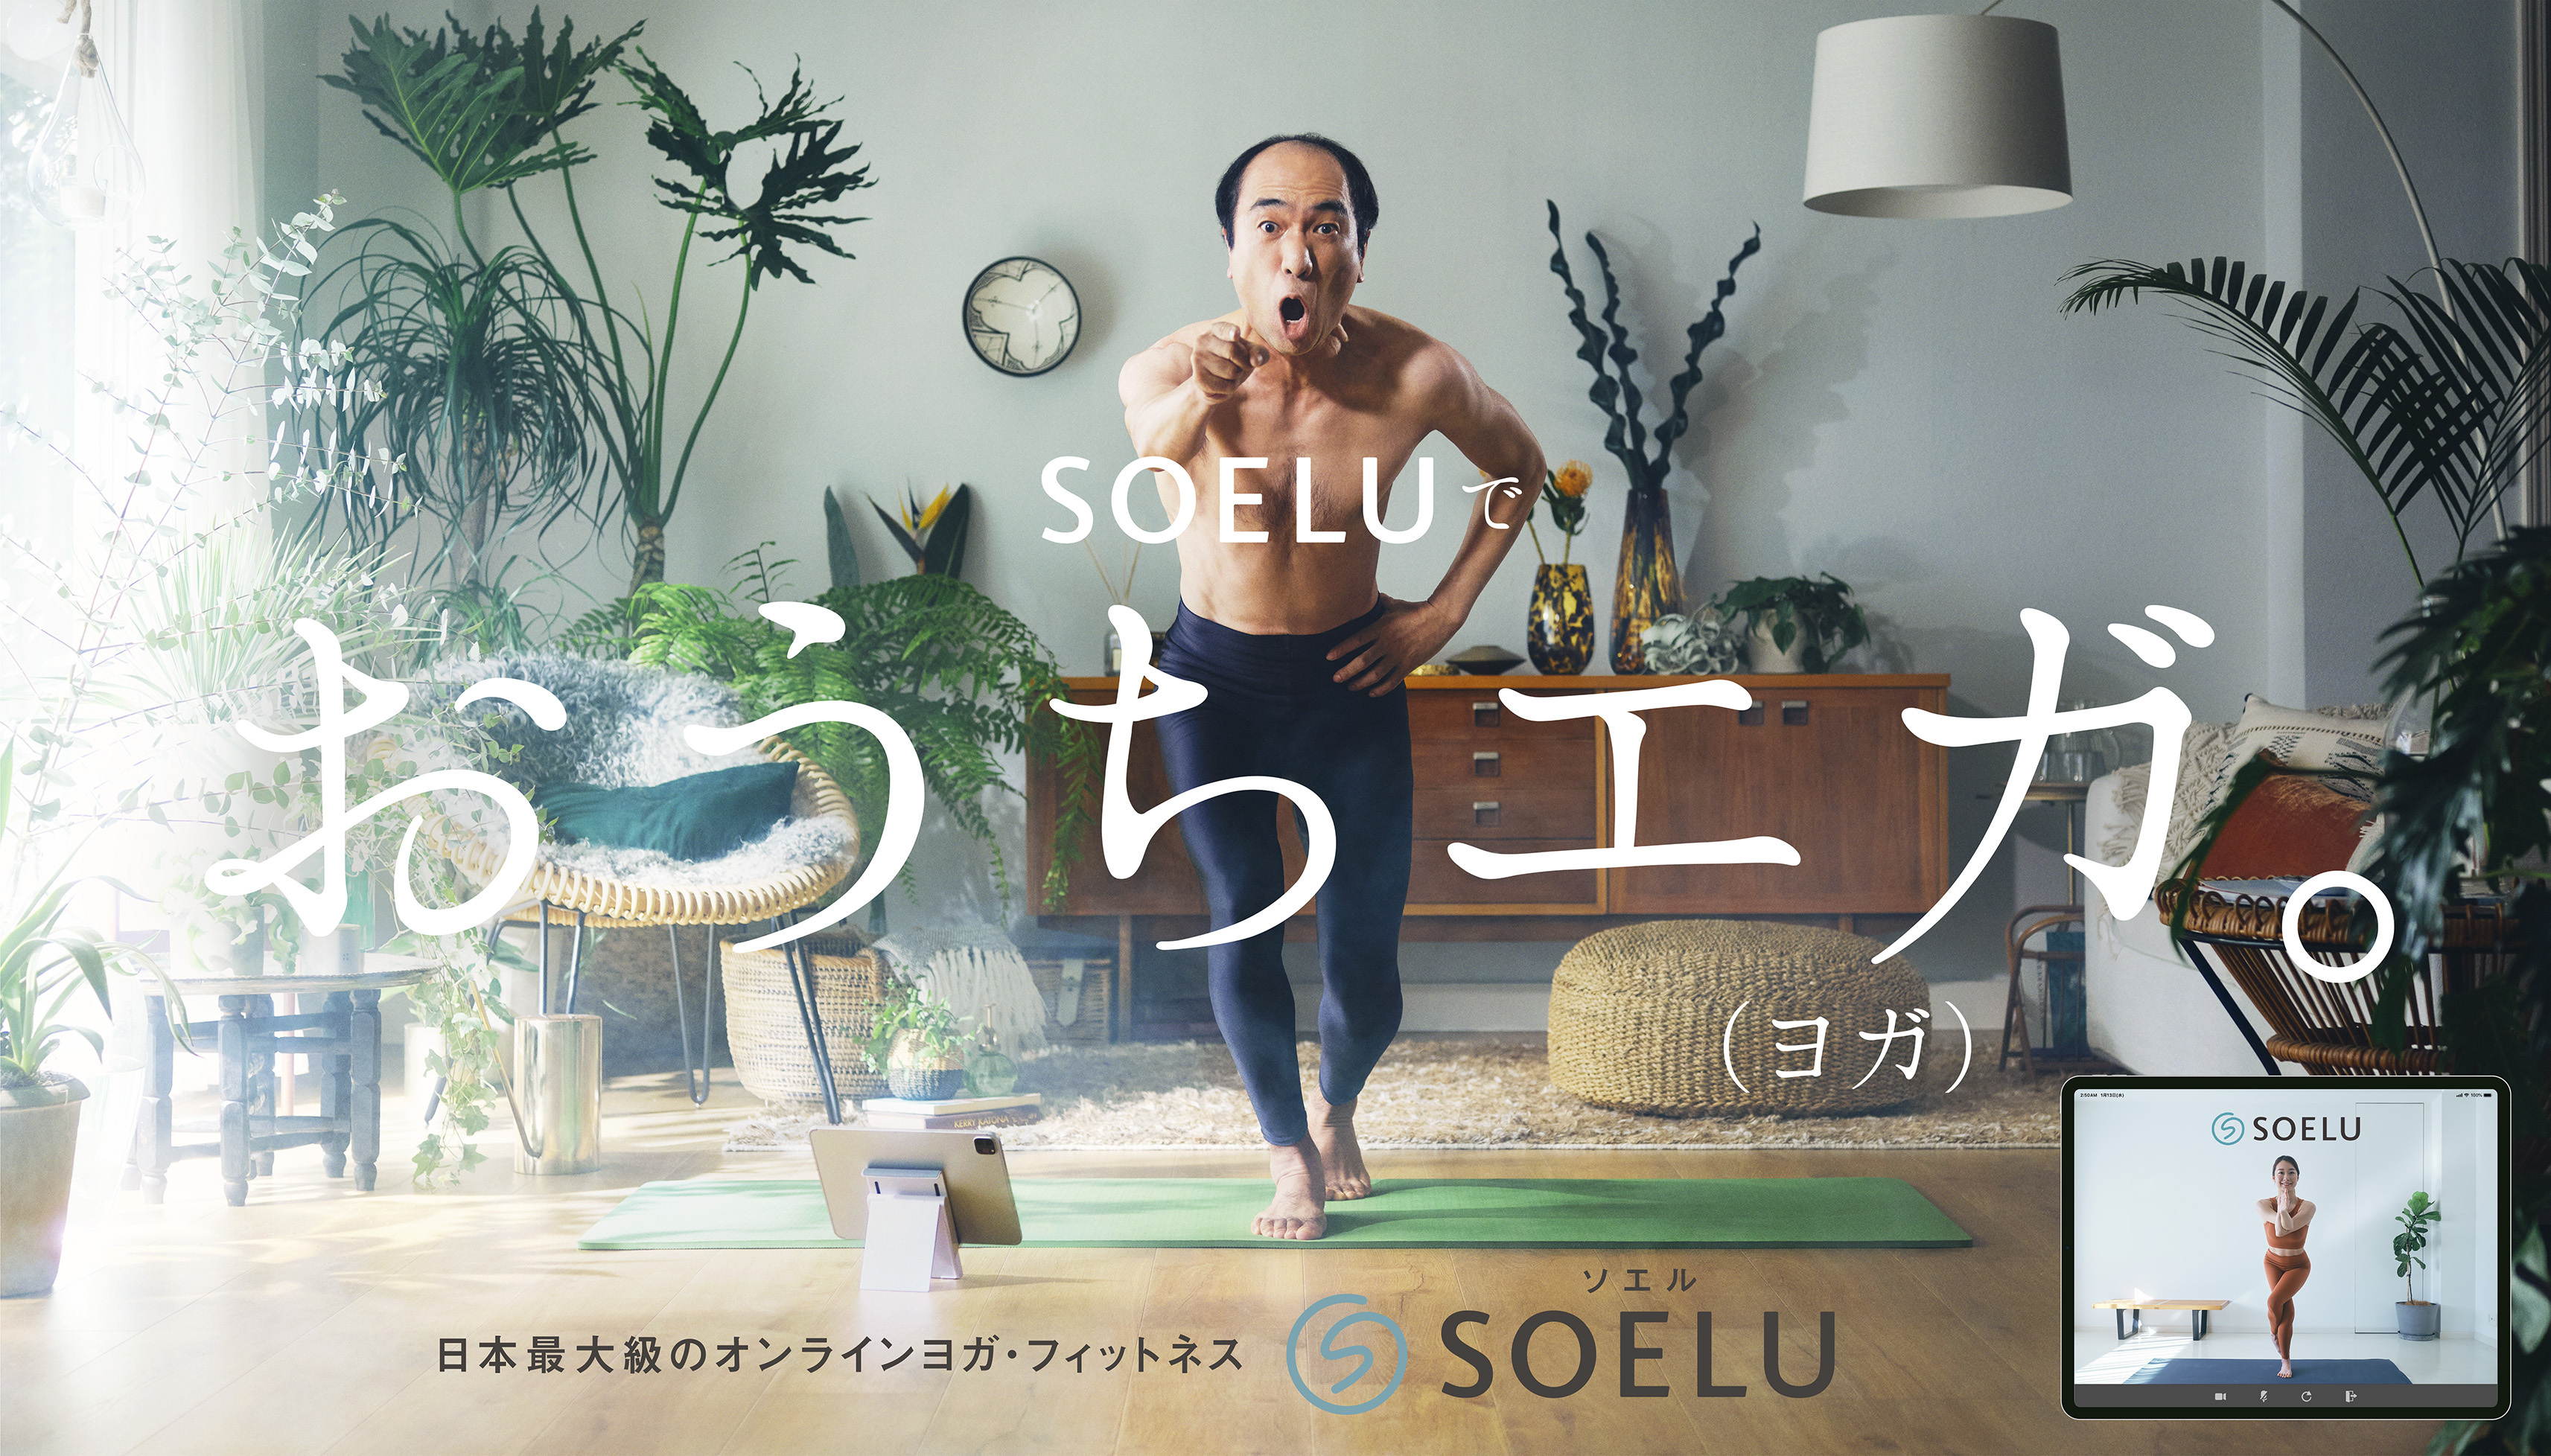 オンラインヨガ・フィットネスはSOELU(ソエル) | 顧客満足度No.1